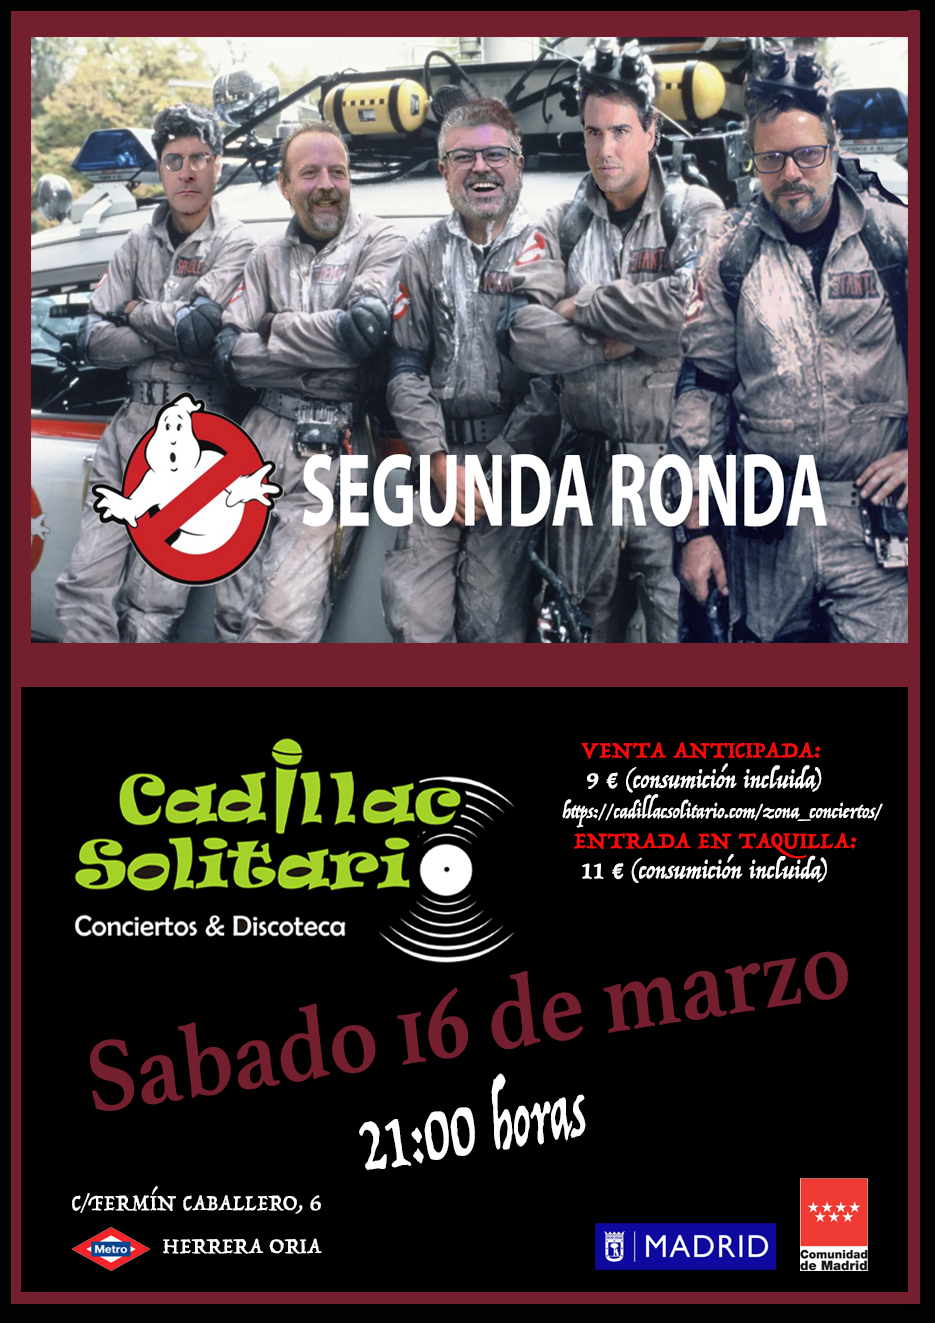 Cadillac Solitario Madrid, Reservado para cumpleaños Madrid, Cumpleaños con concierto Madrid, Celebrar cumpleaños Madrid, Local para cumpleaños Madrid